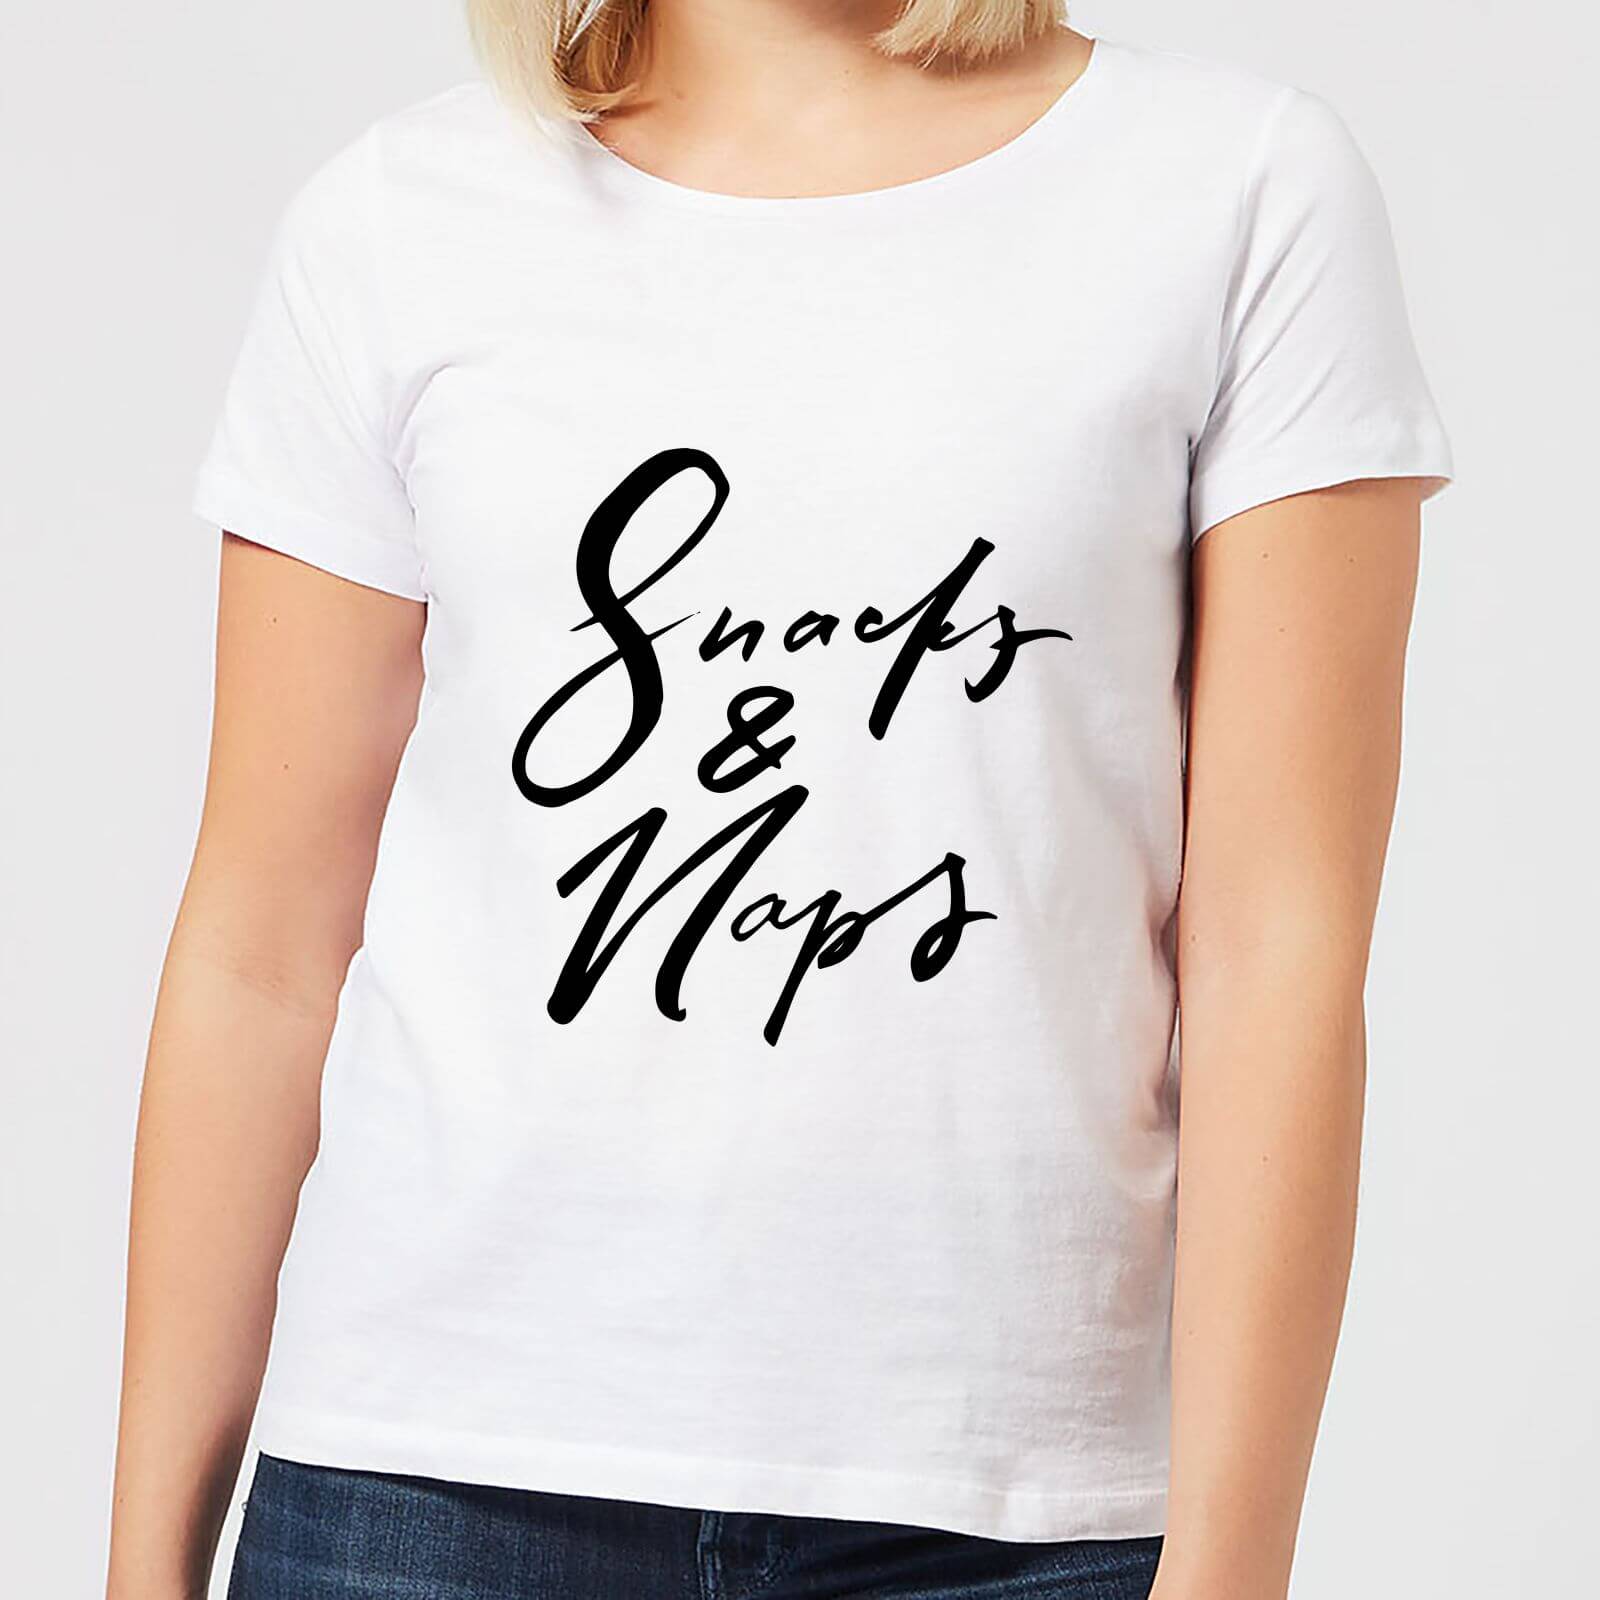 Snacks and Naps Women's T-Shirt - White - S - White